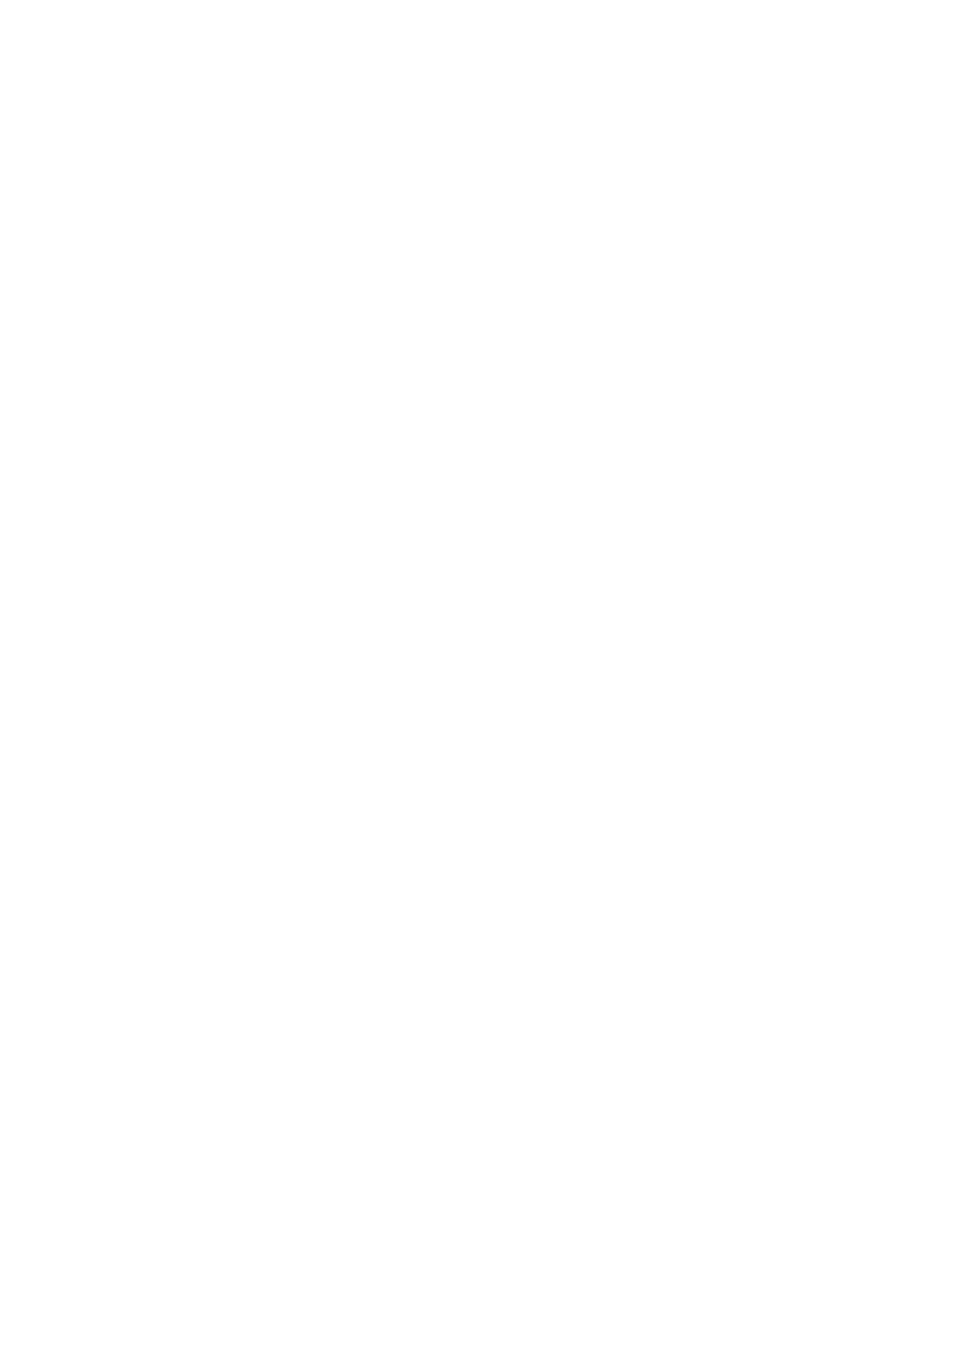 4281/8-8-2014 (ΦΕΚ 160/Α'/8-8-2014) «Μέτρα στήριξης και ανάπτυξης της ελληνικής οικονομίας, οργανωτικά θέματα Υπουργείου Οικονομικών και άλλες διατάξεις» 1.28 Την Υπ.